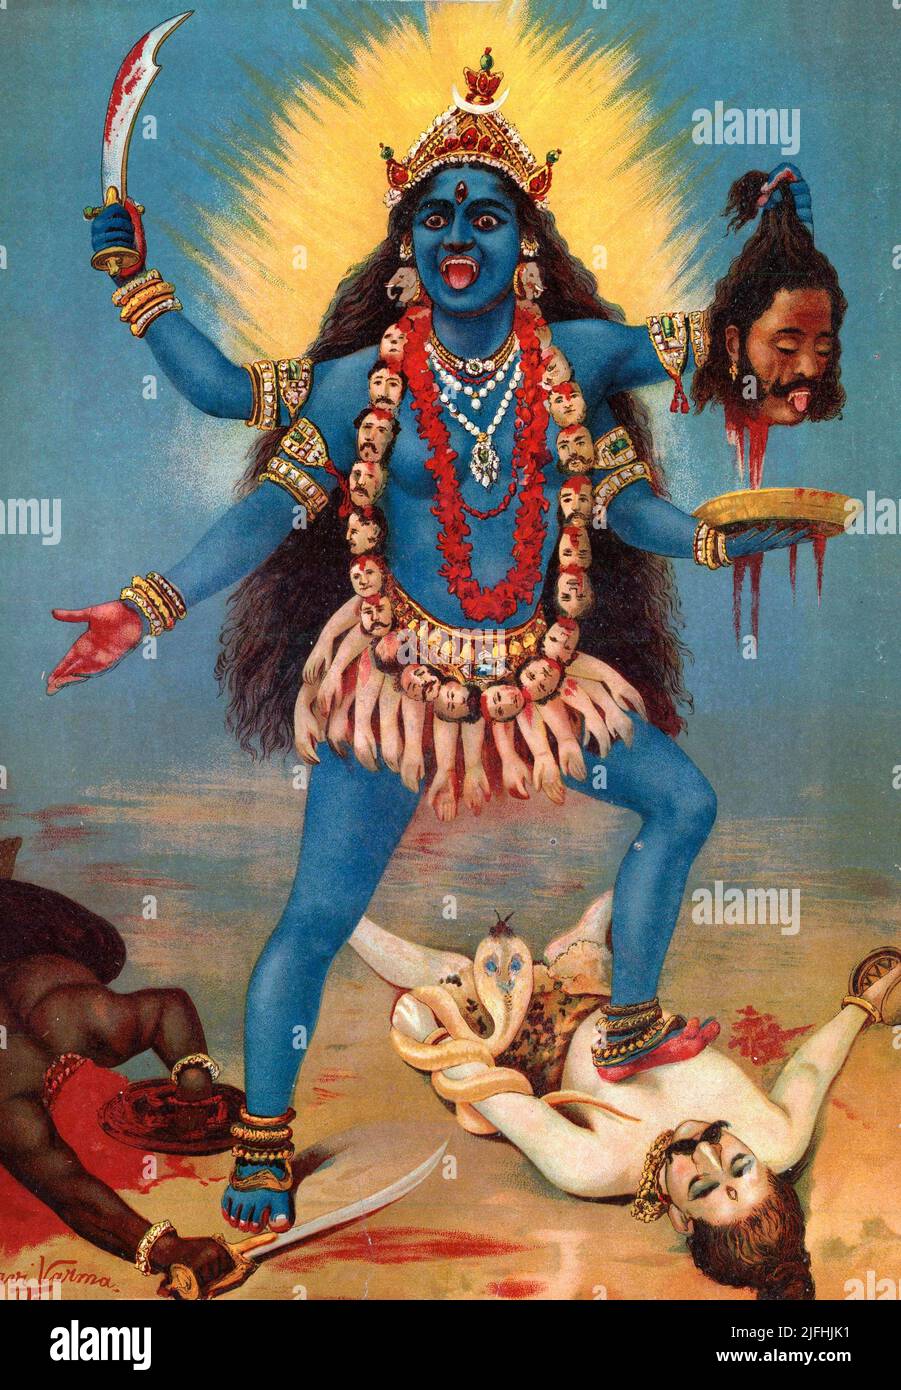 Kali pisoteando a Shiva Foto de stock